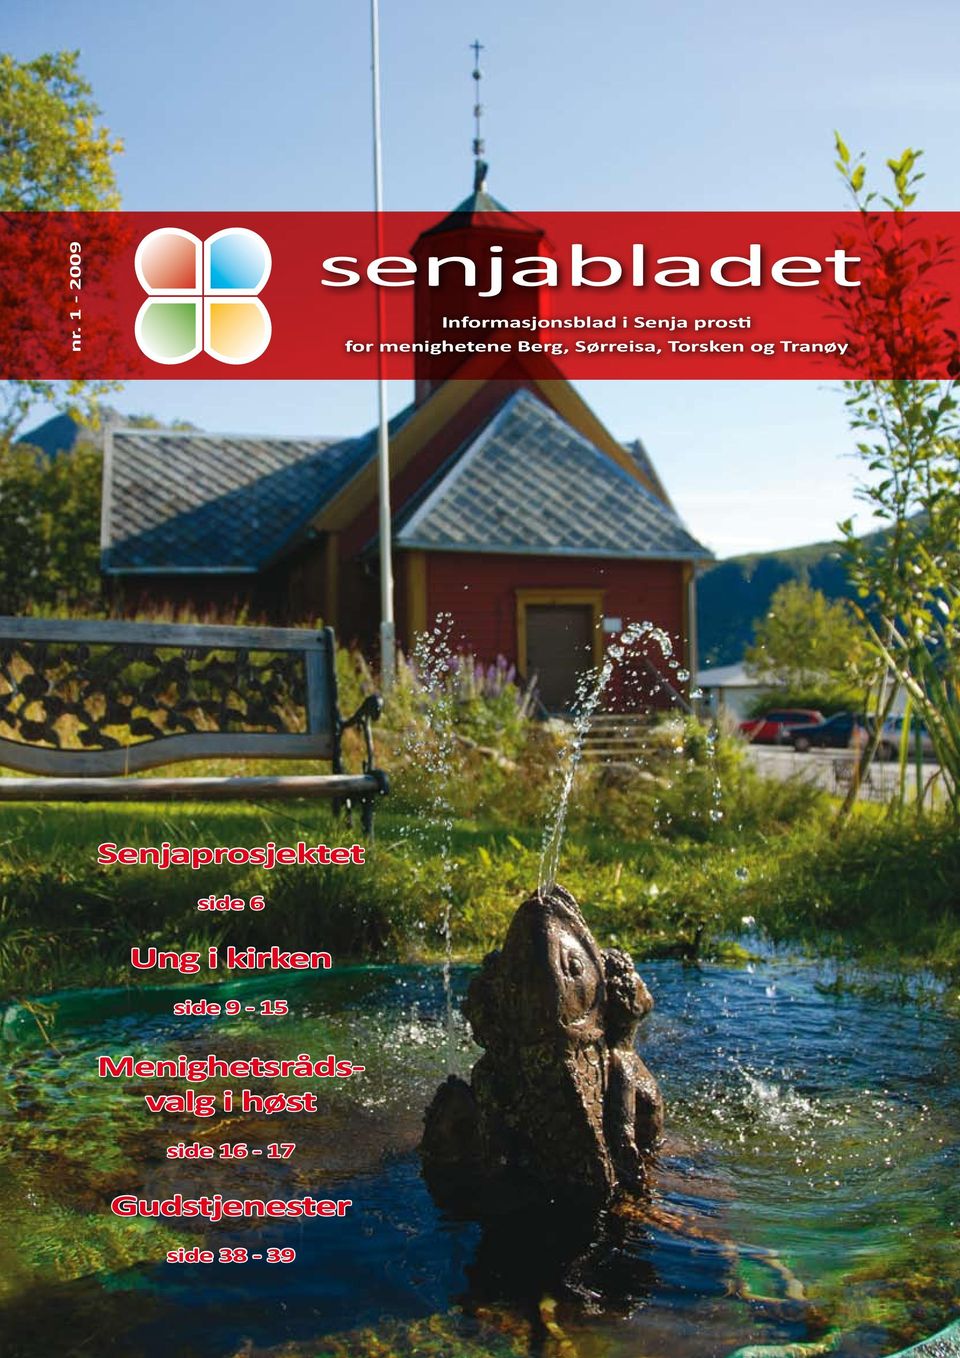 Tranøy Senjaprosjektet side 6 Ung i kirken side 9-15